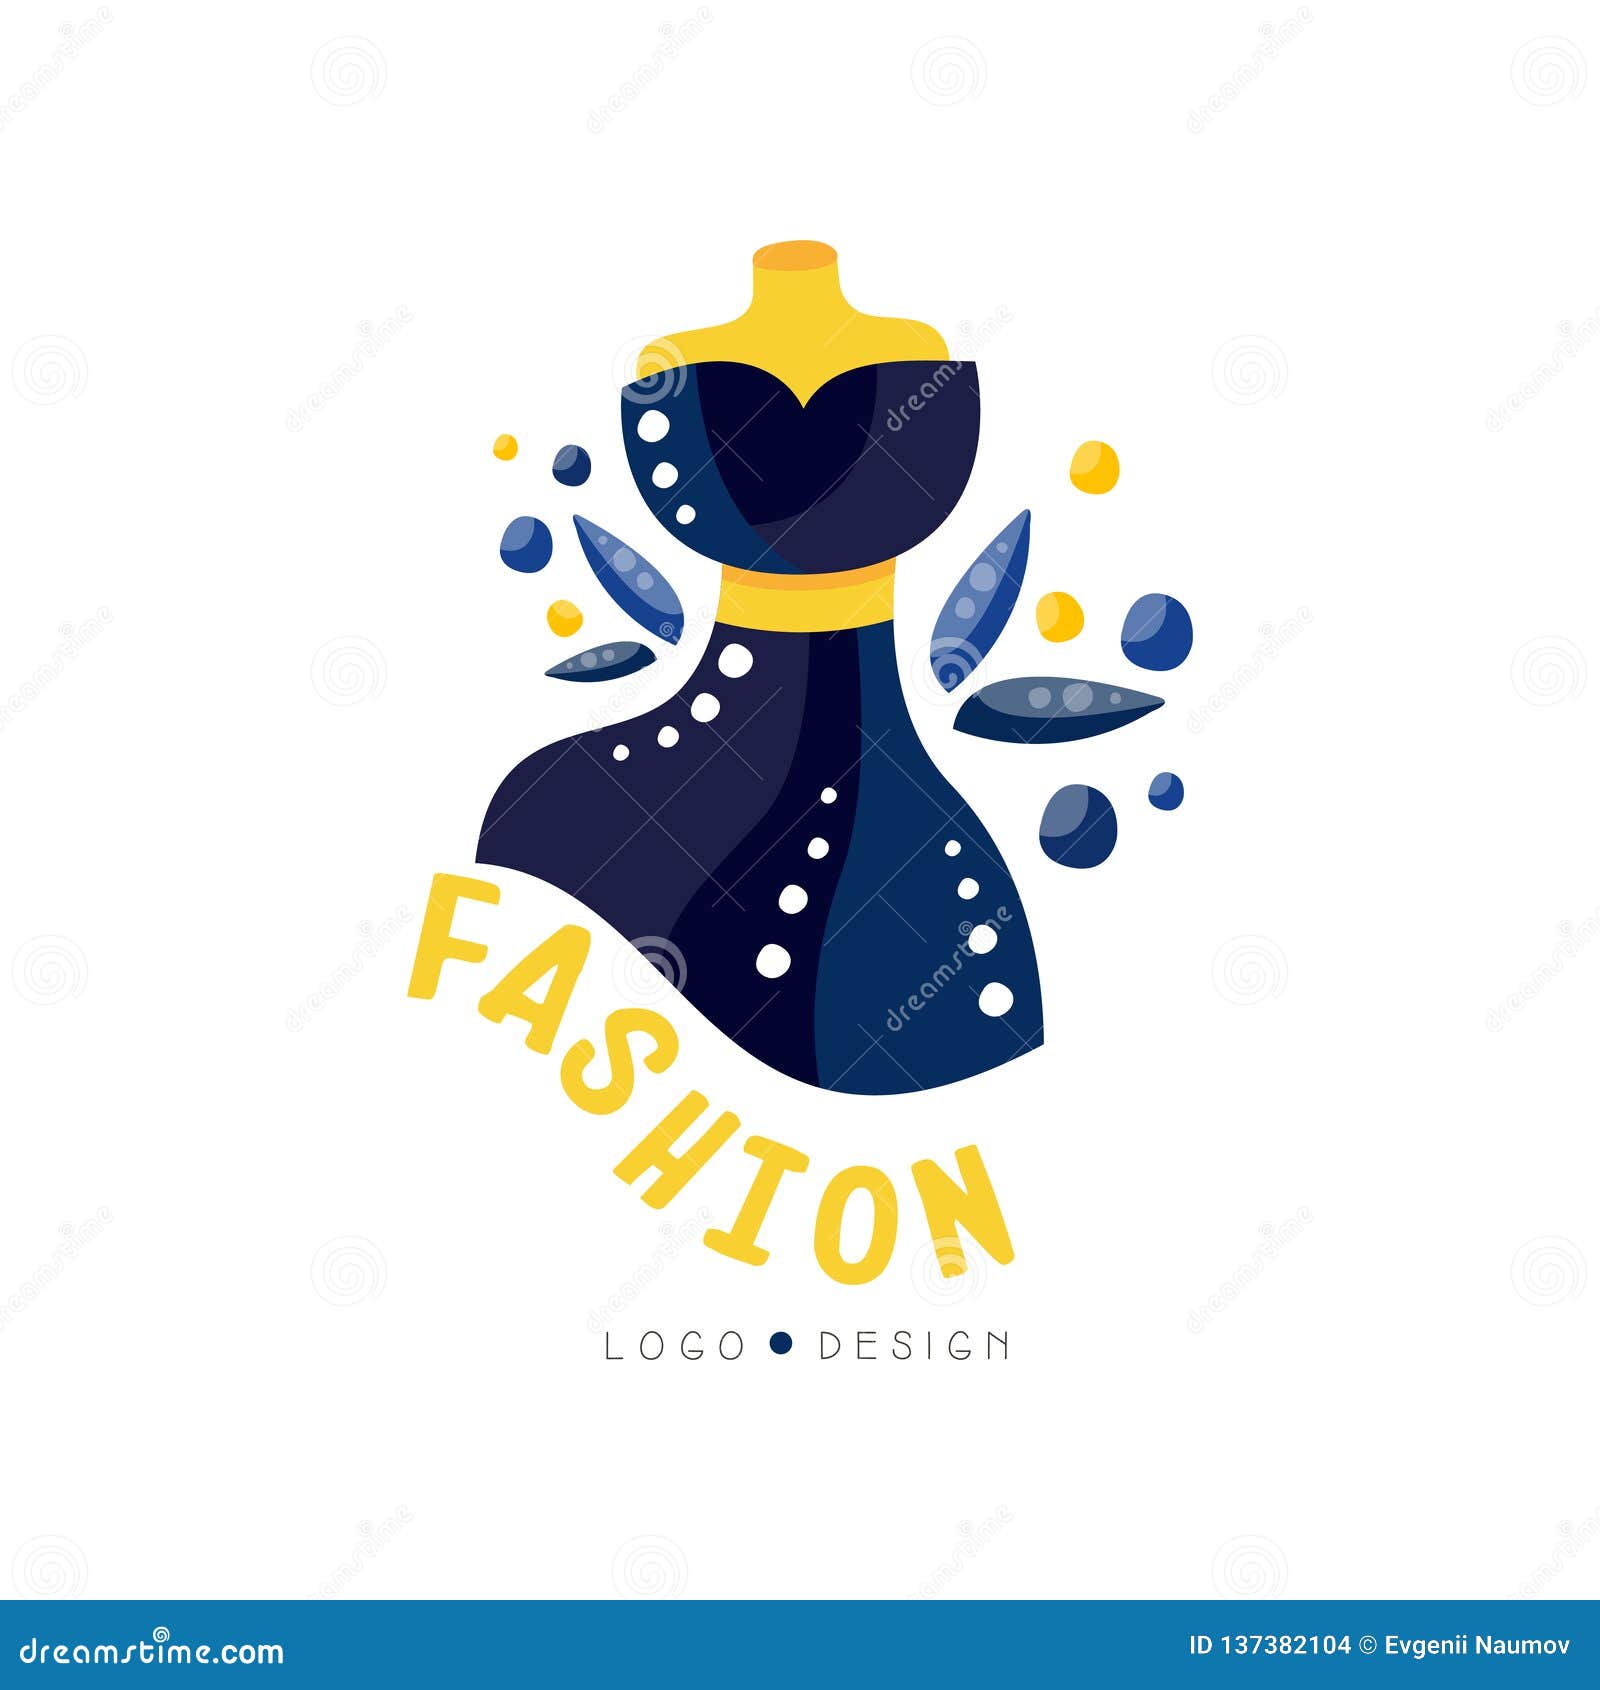 Fashion Logo Design Fashion Clothes Shop Boutique Beauty Salon Dress Store Label Vector Illustration Stock Vector Illustration Of Label Logotype